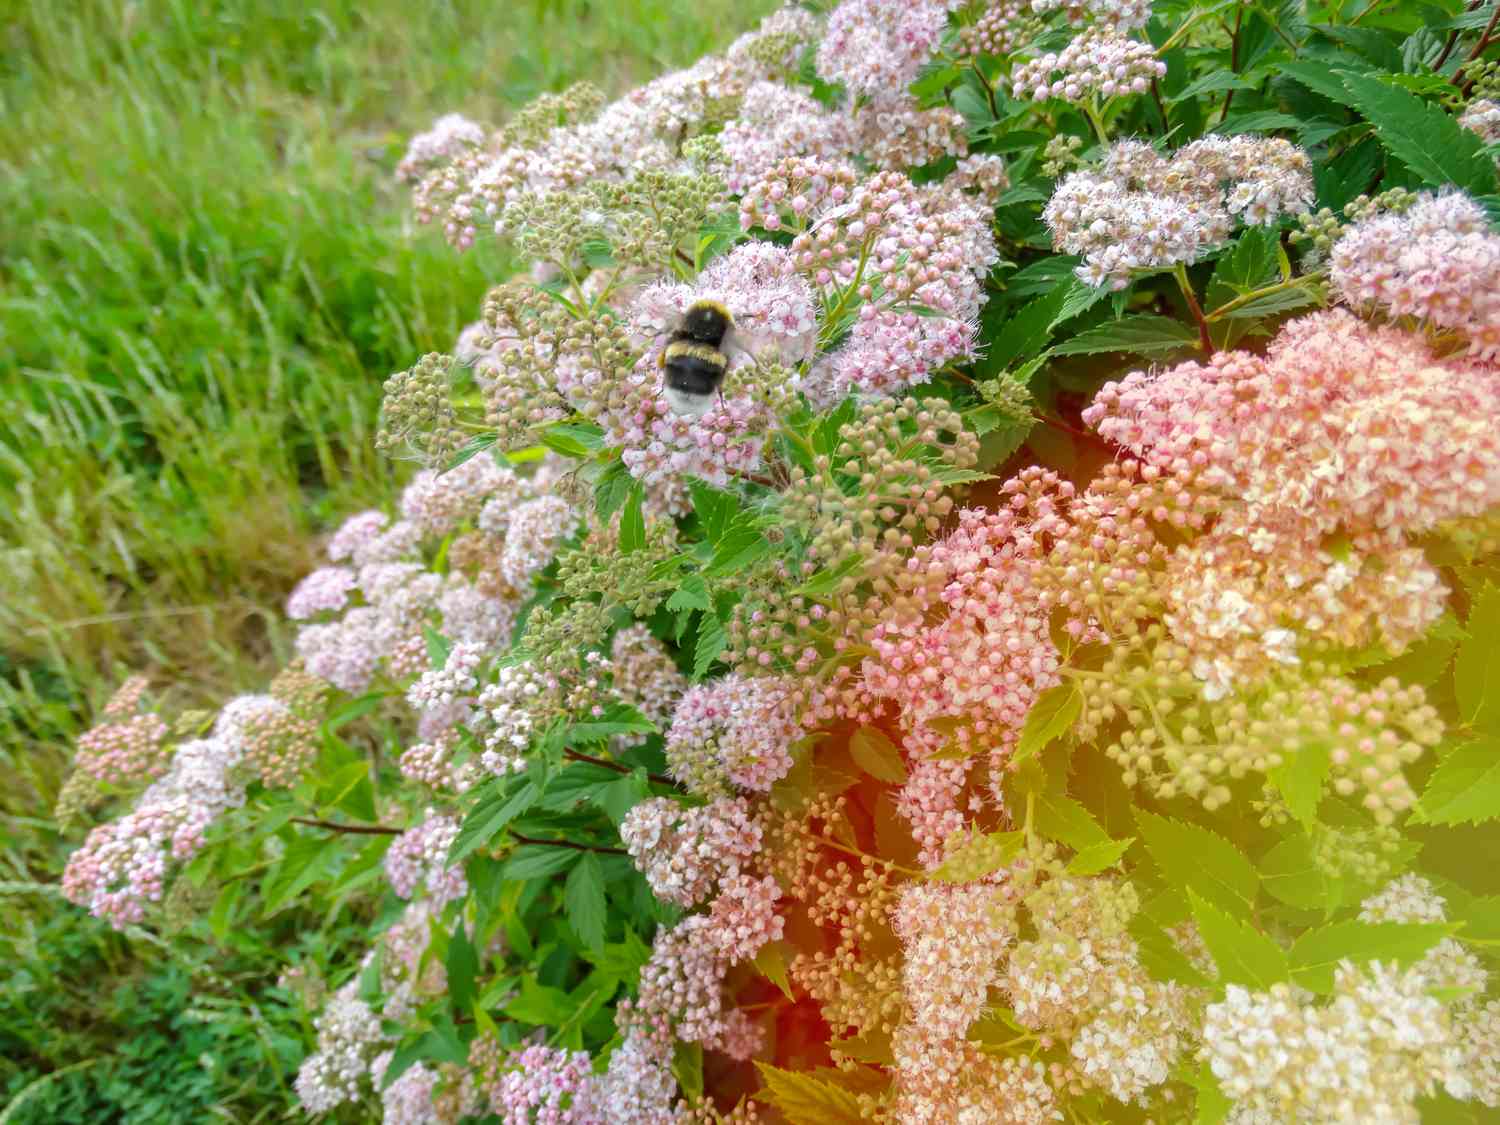 arbusto de spirea princesinha com uma abelha nele